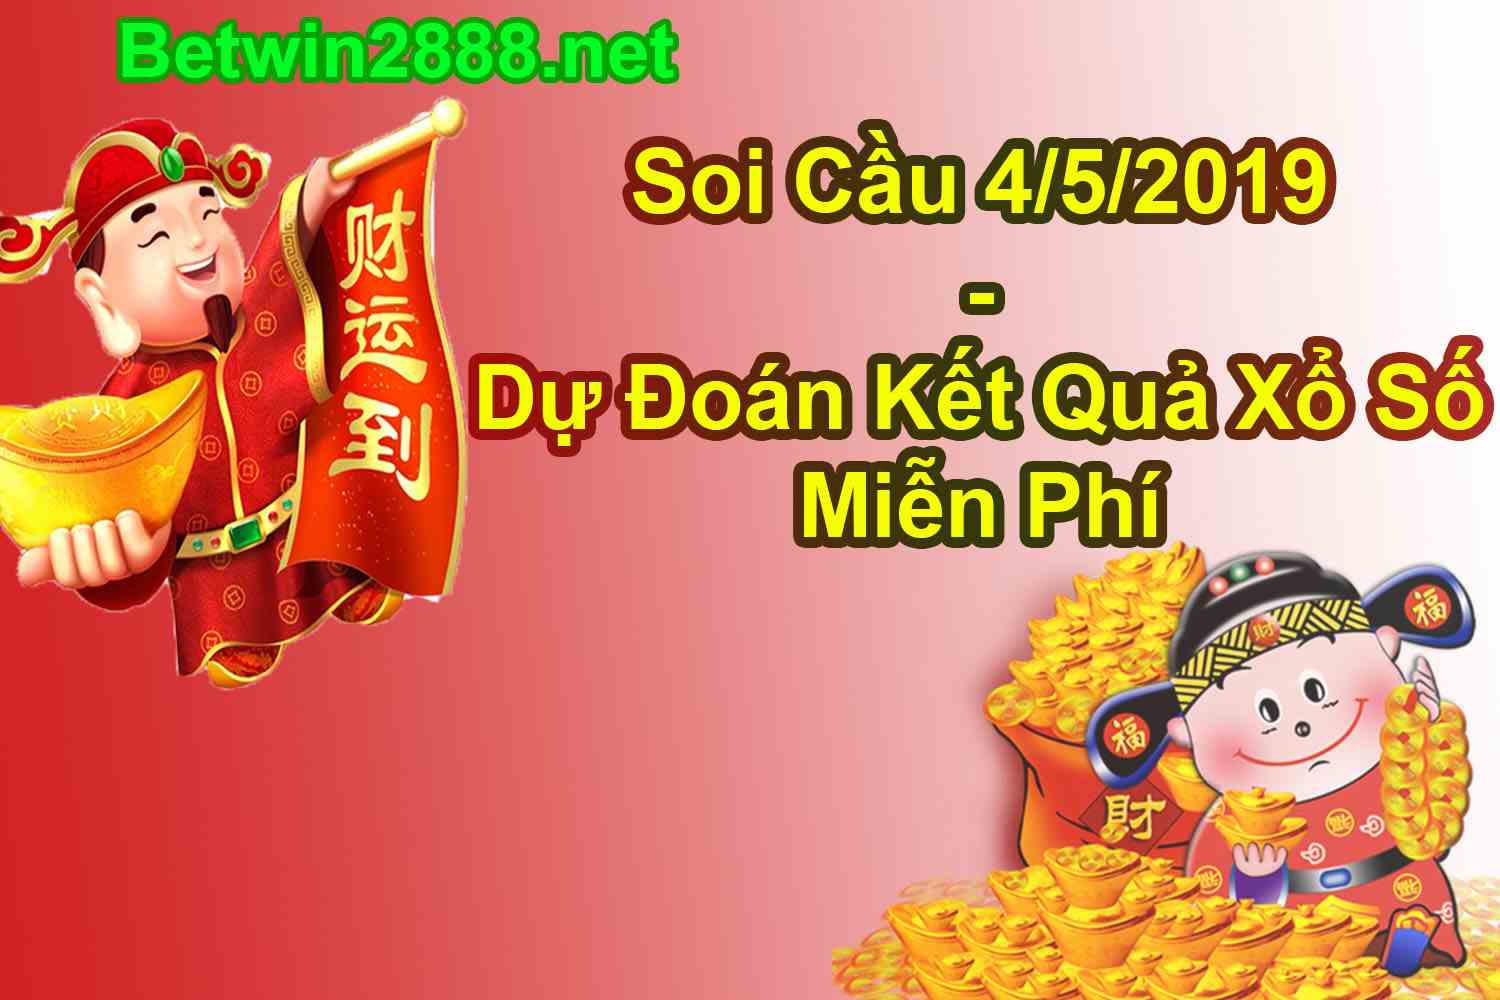 Soi Cầu 4/5/2019 Hôm Nay - Dự Đoán Kết Quả Xổ Số 04-05-2019